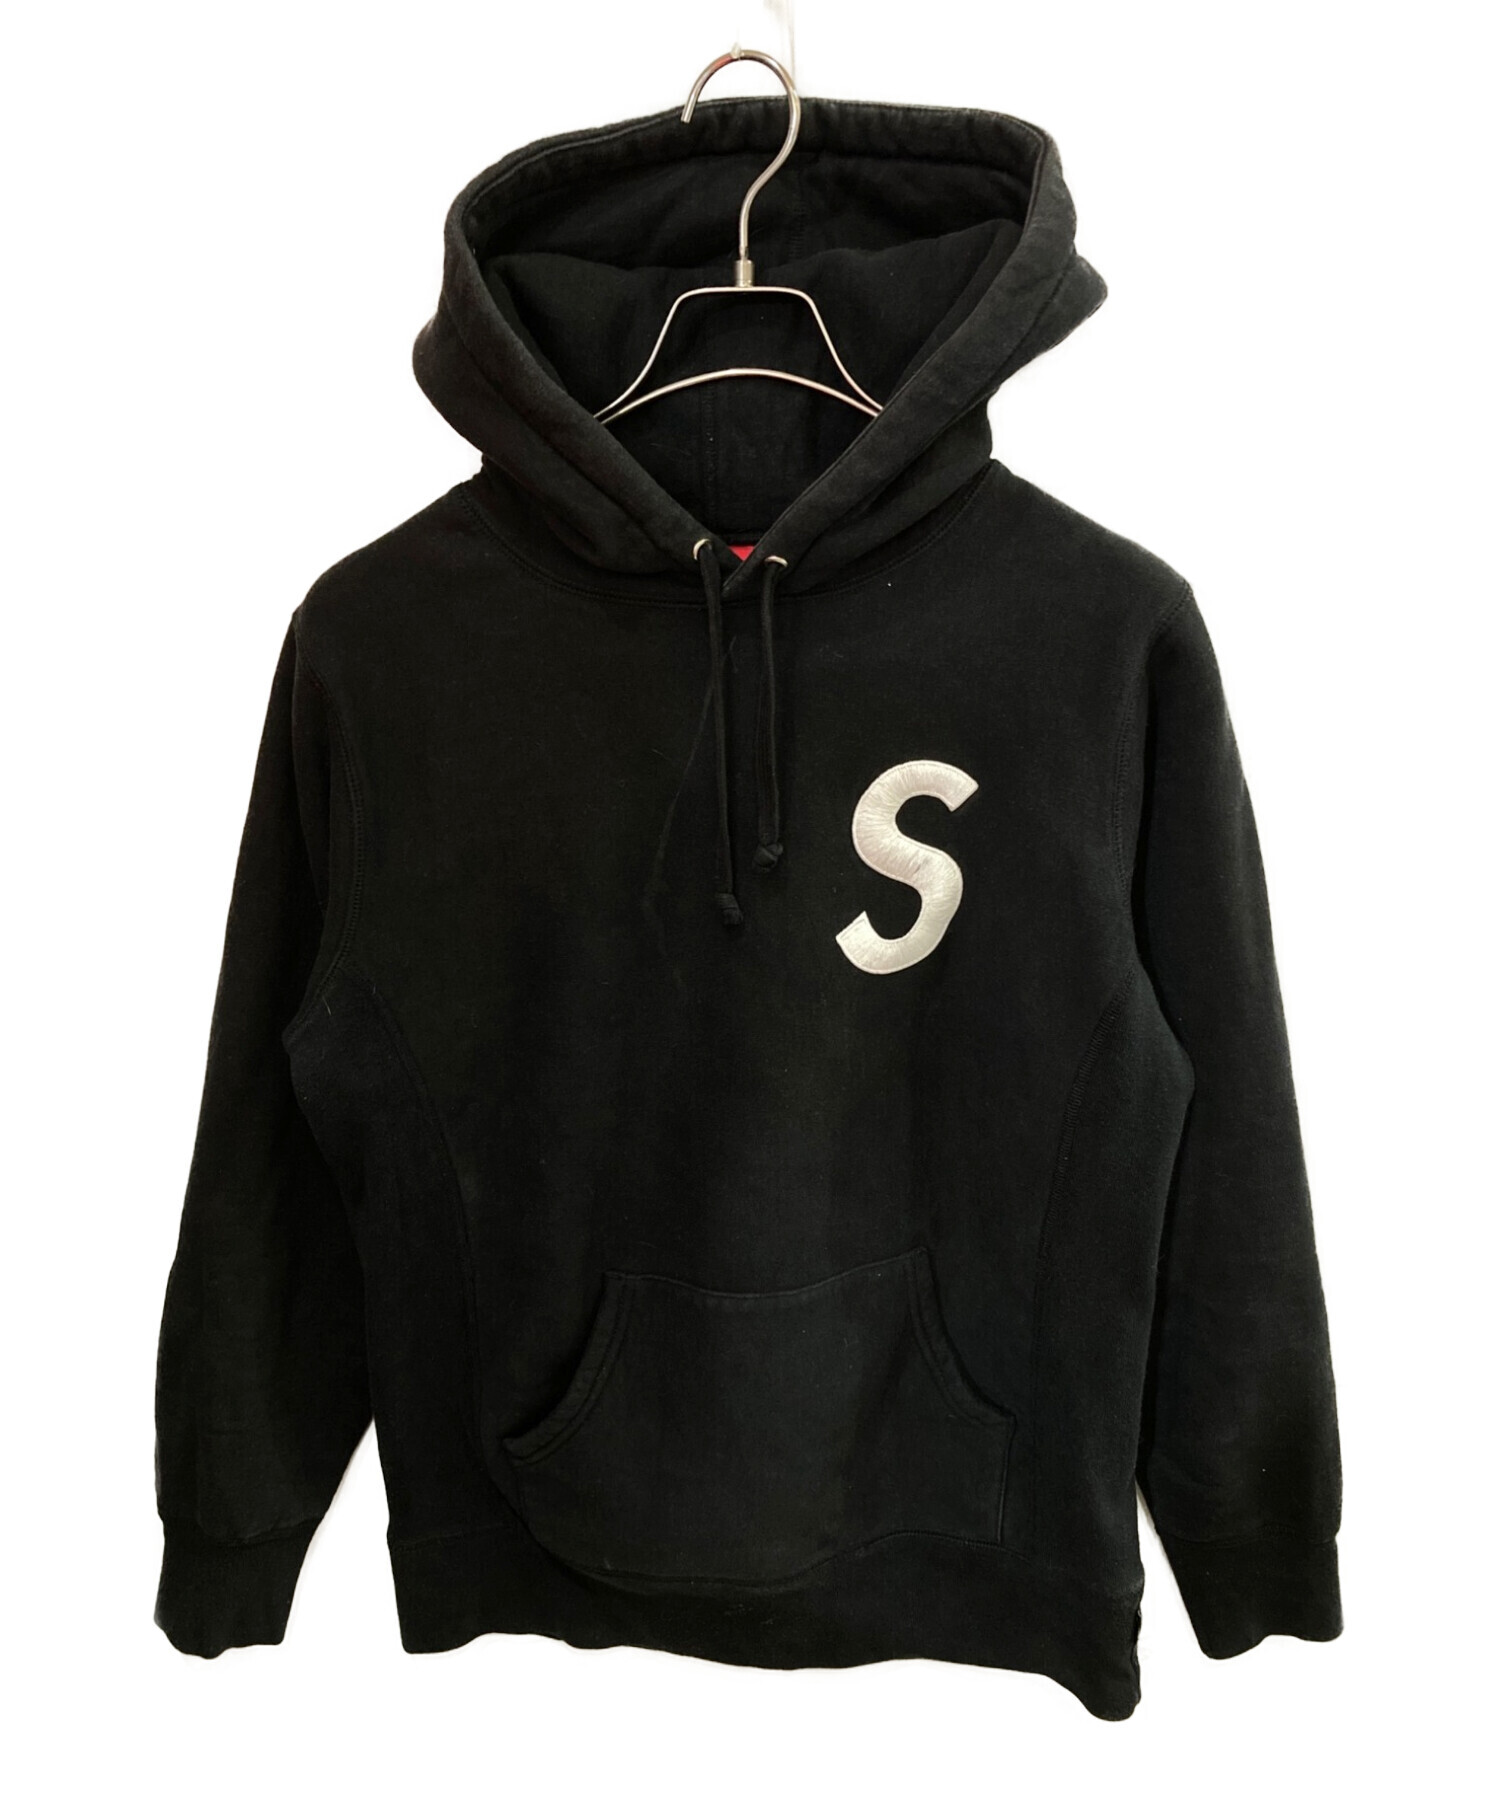 Supreme (シュプリーム) S Logo Hooded Sweatshirt ブラック サイズ:S